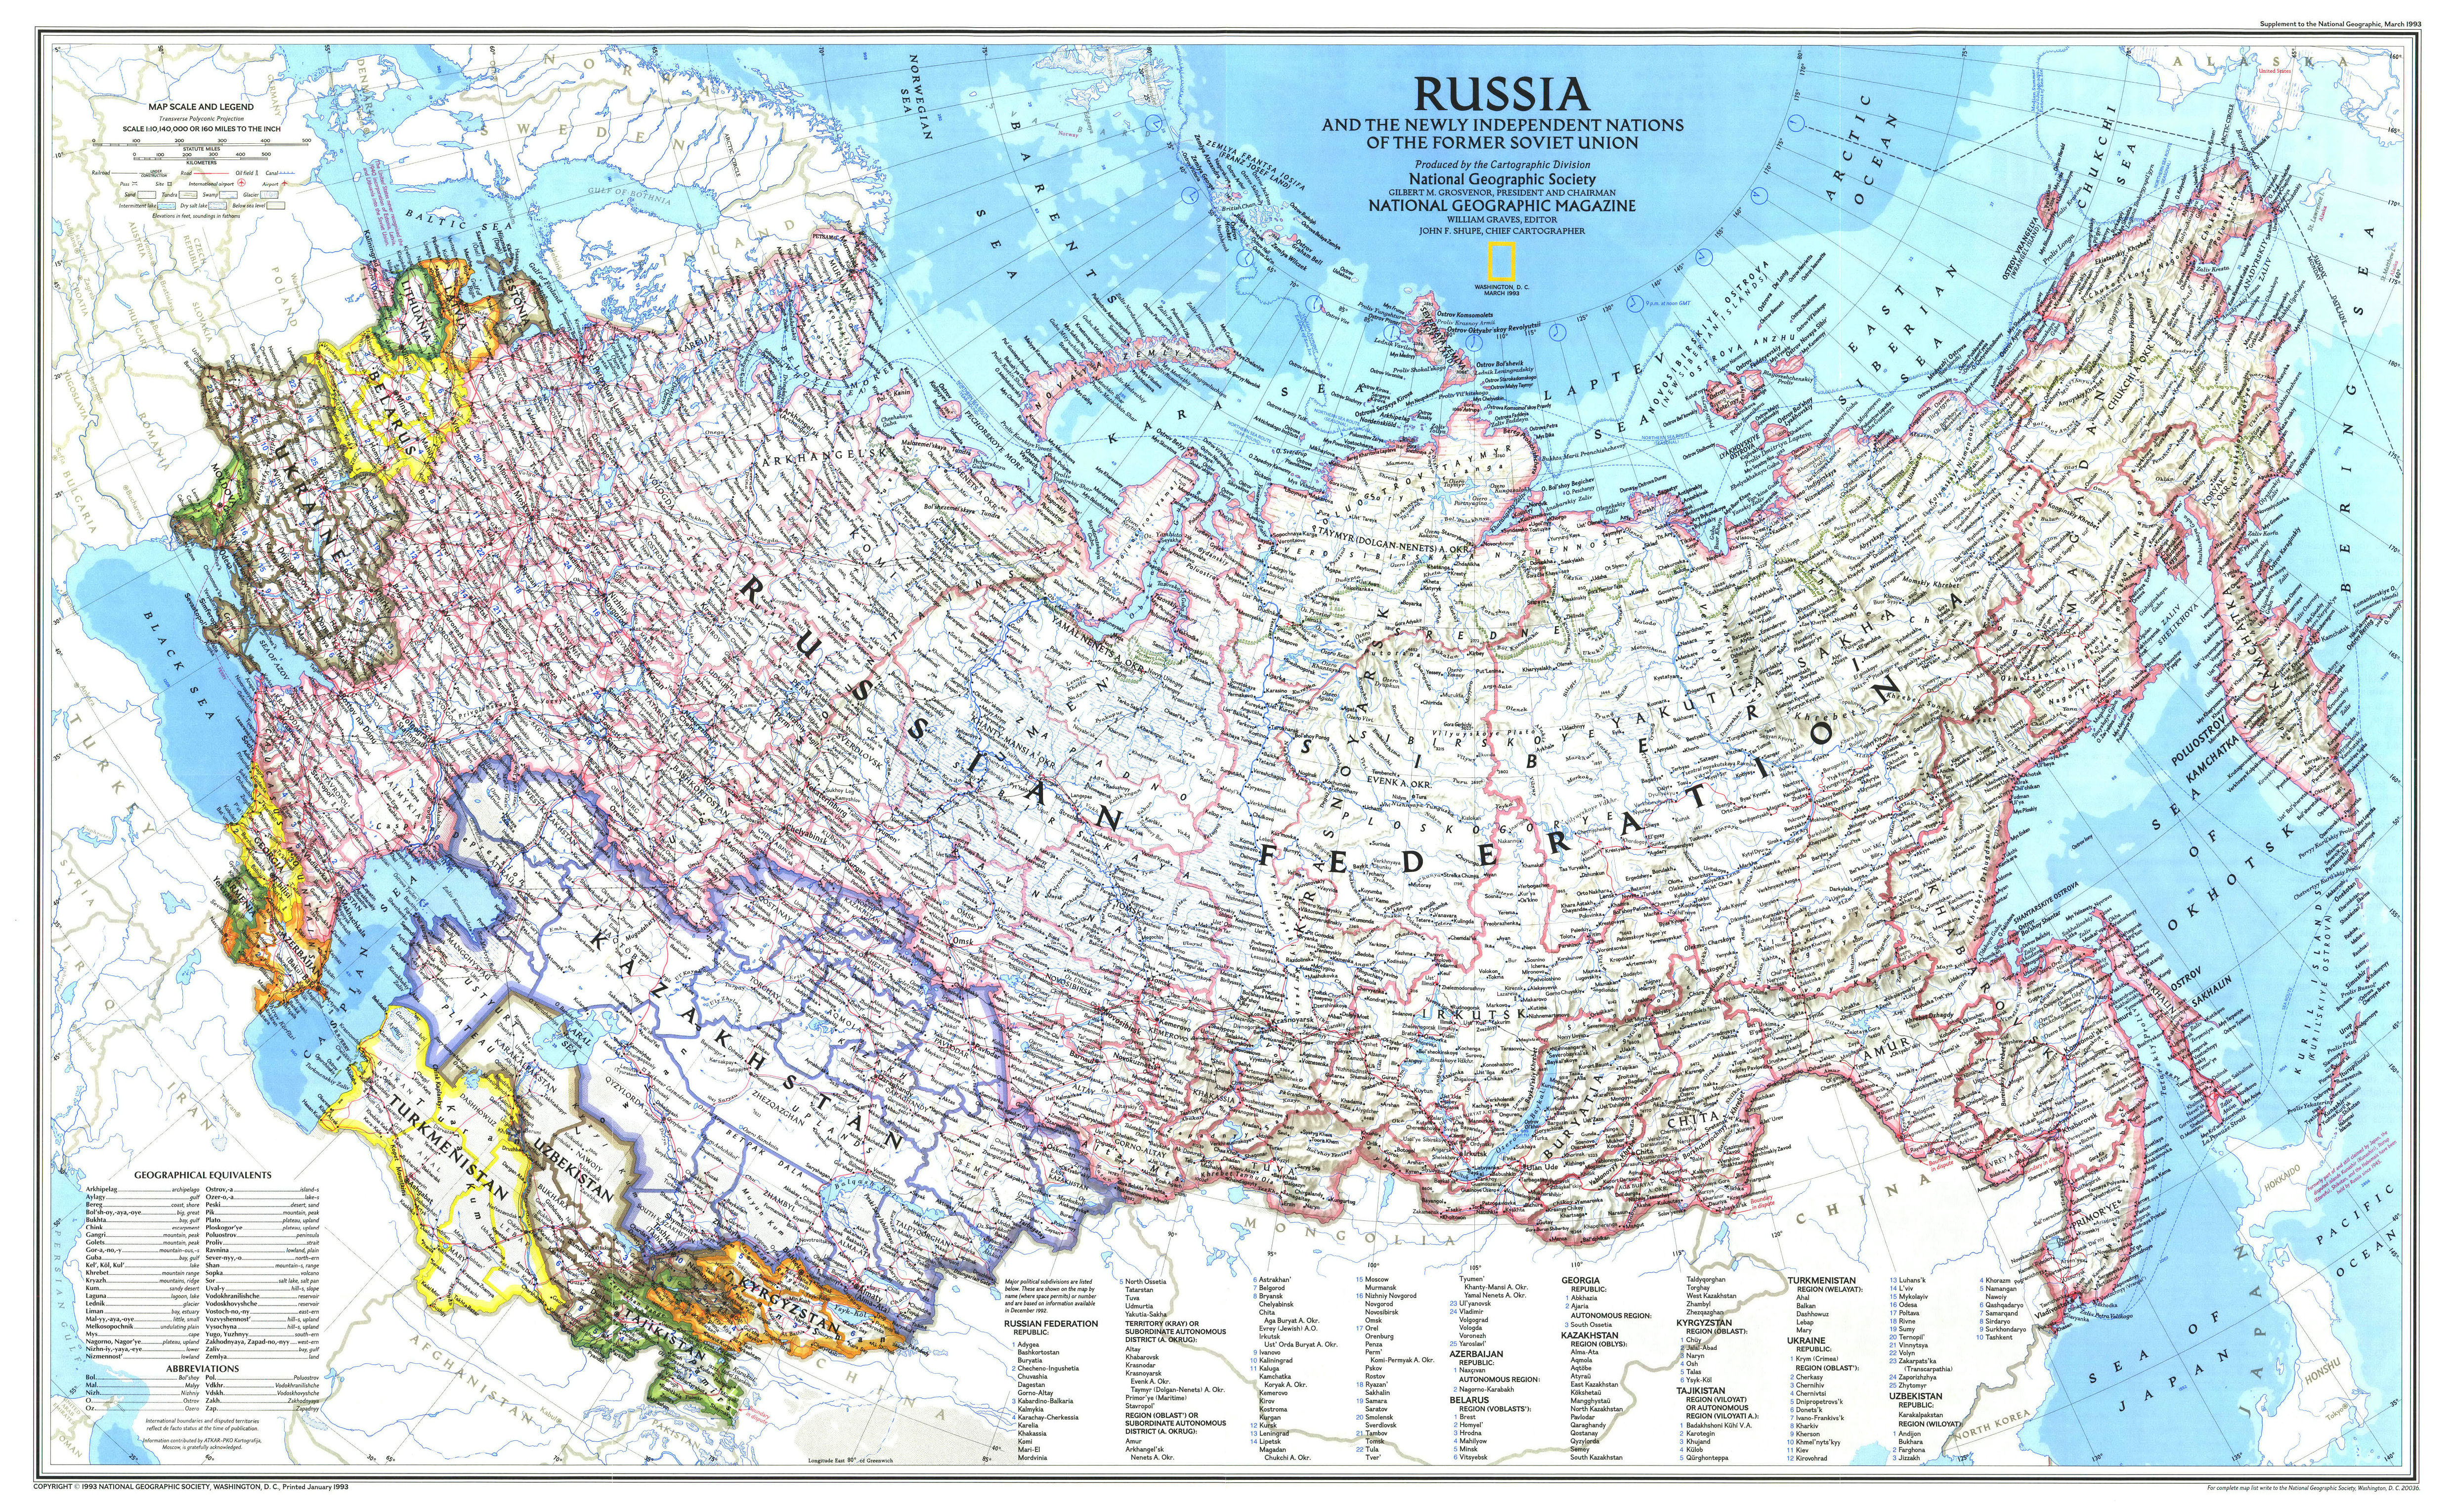 Карта морей россии с городами подробная